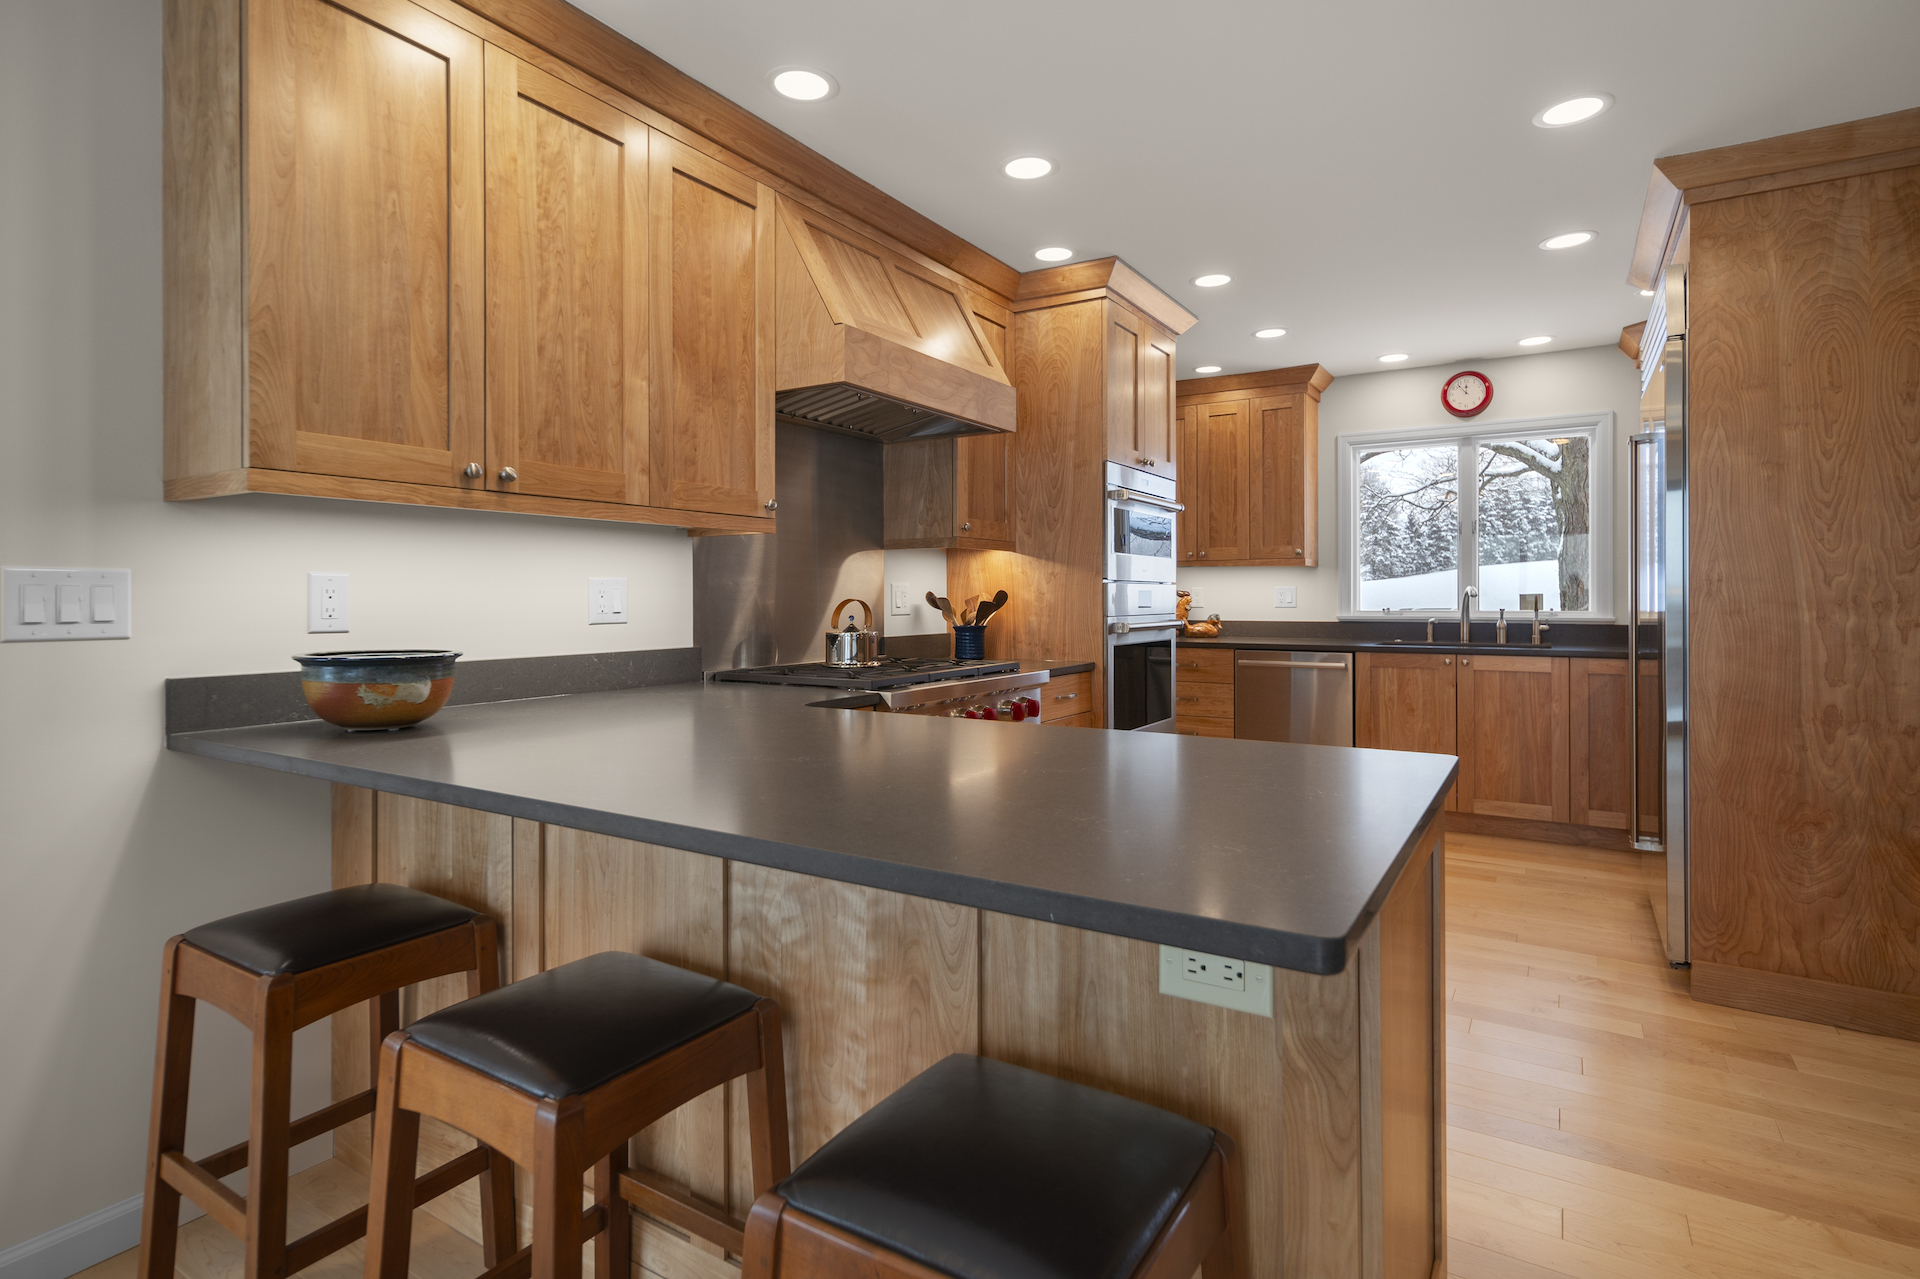 Gorgeous kitchen with grey quartz countertops